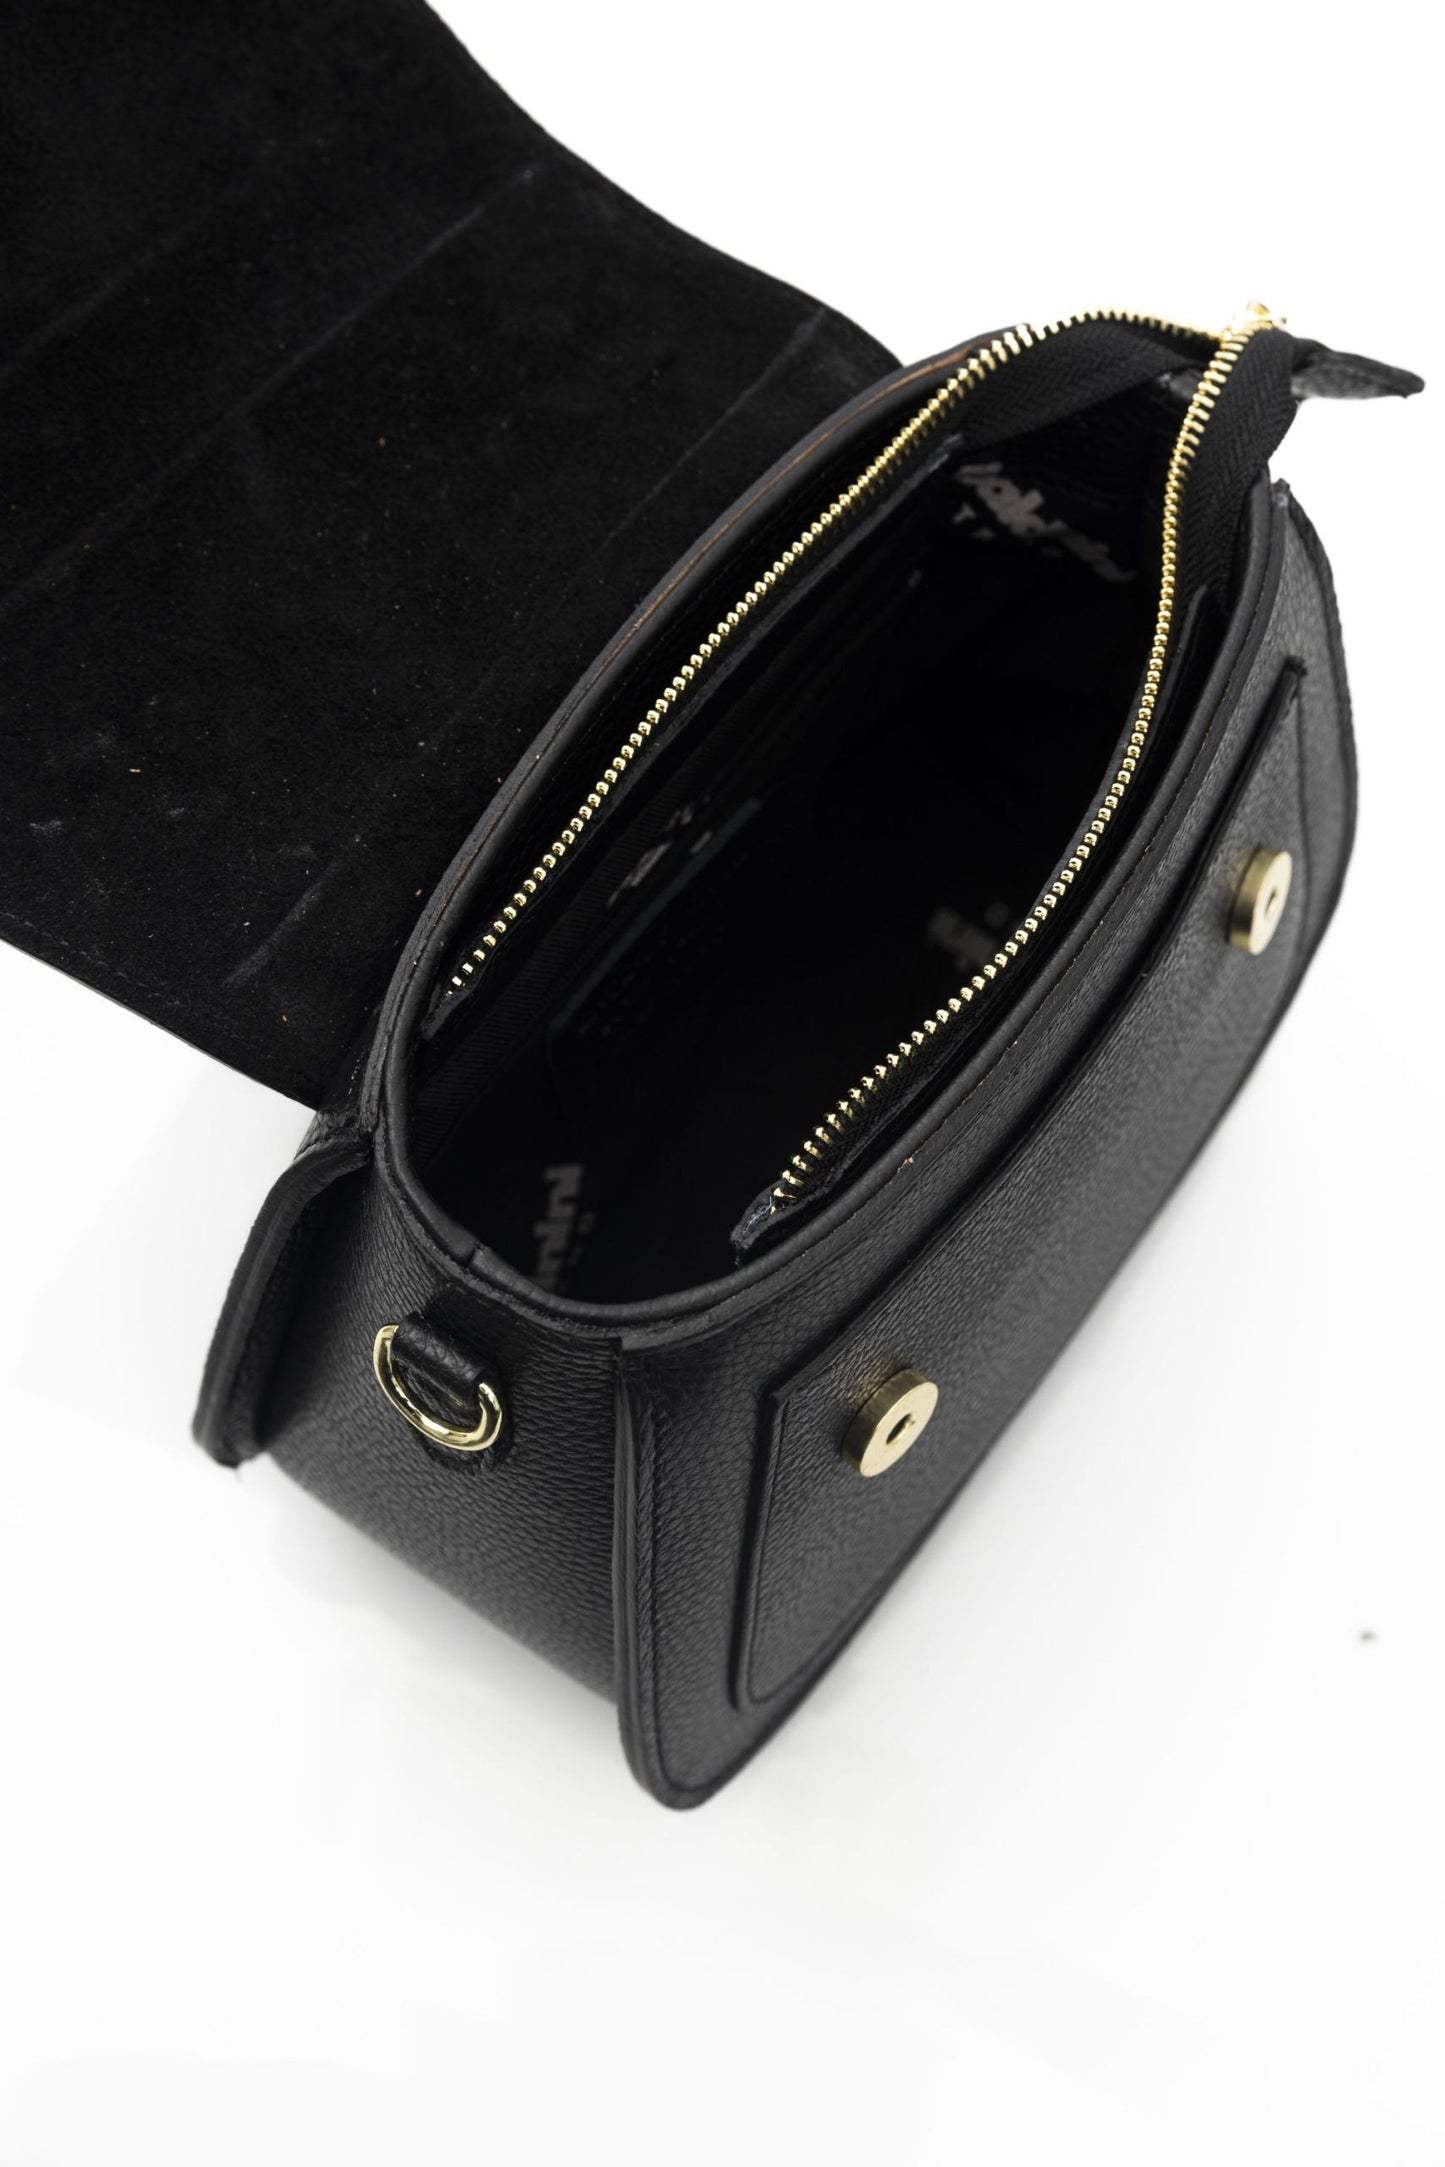 Elegant Black Leather Shoulder Bag with Golden Accents